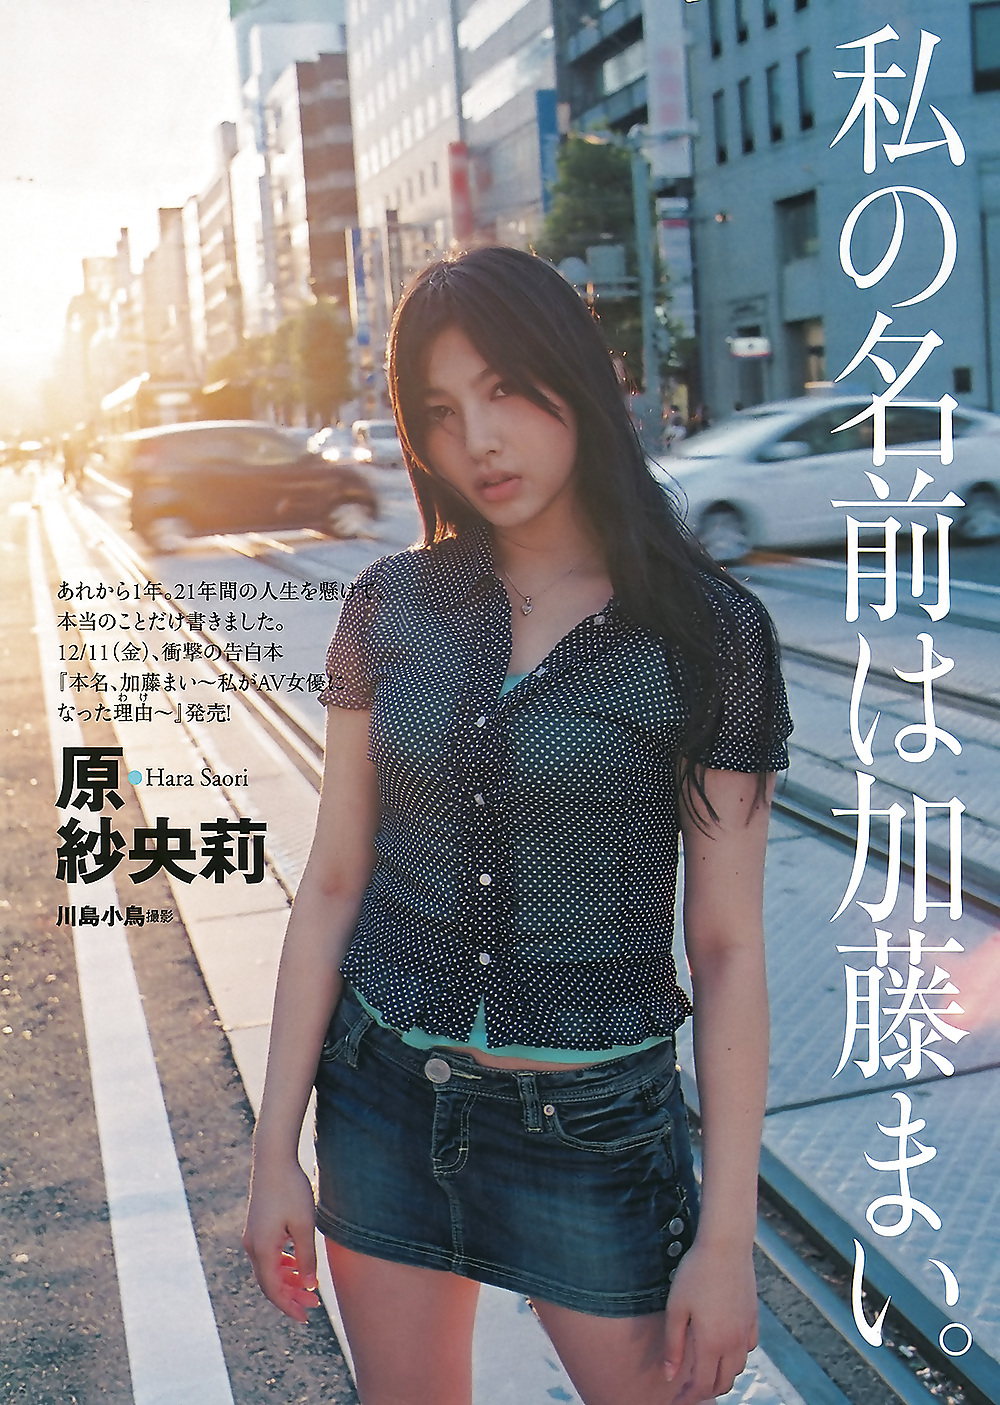 Saori Hara Weekly Playboy #8140743